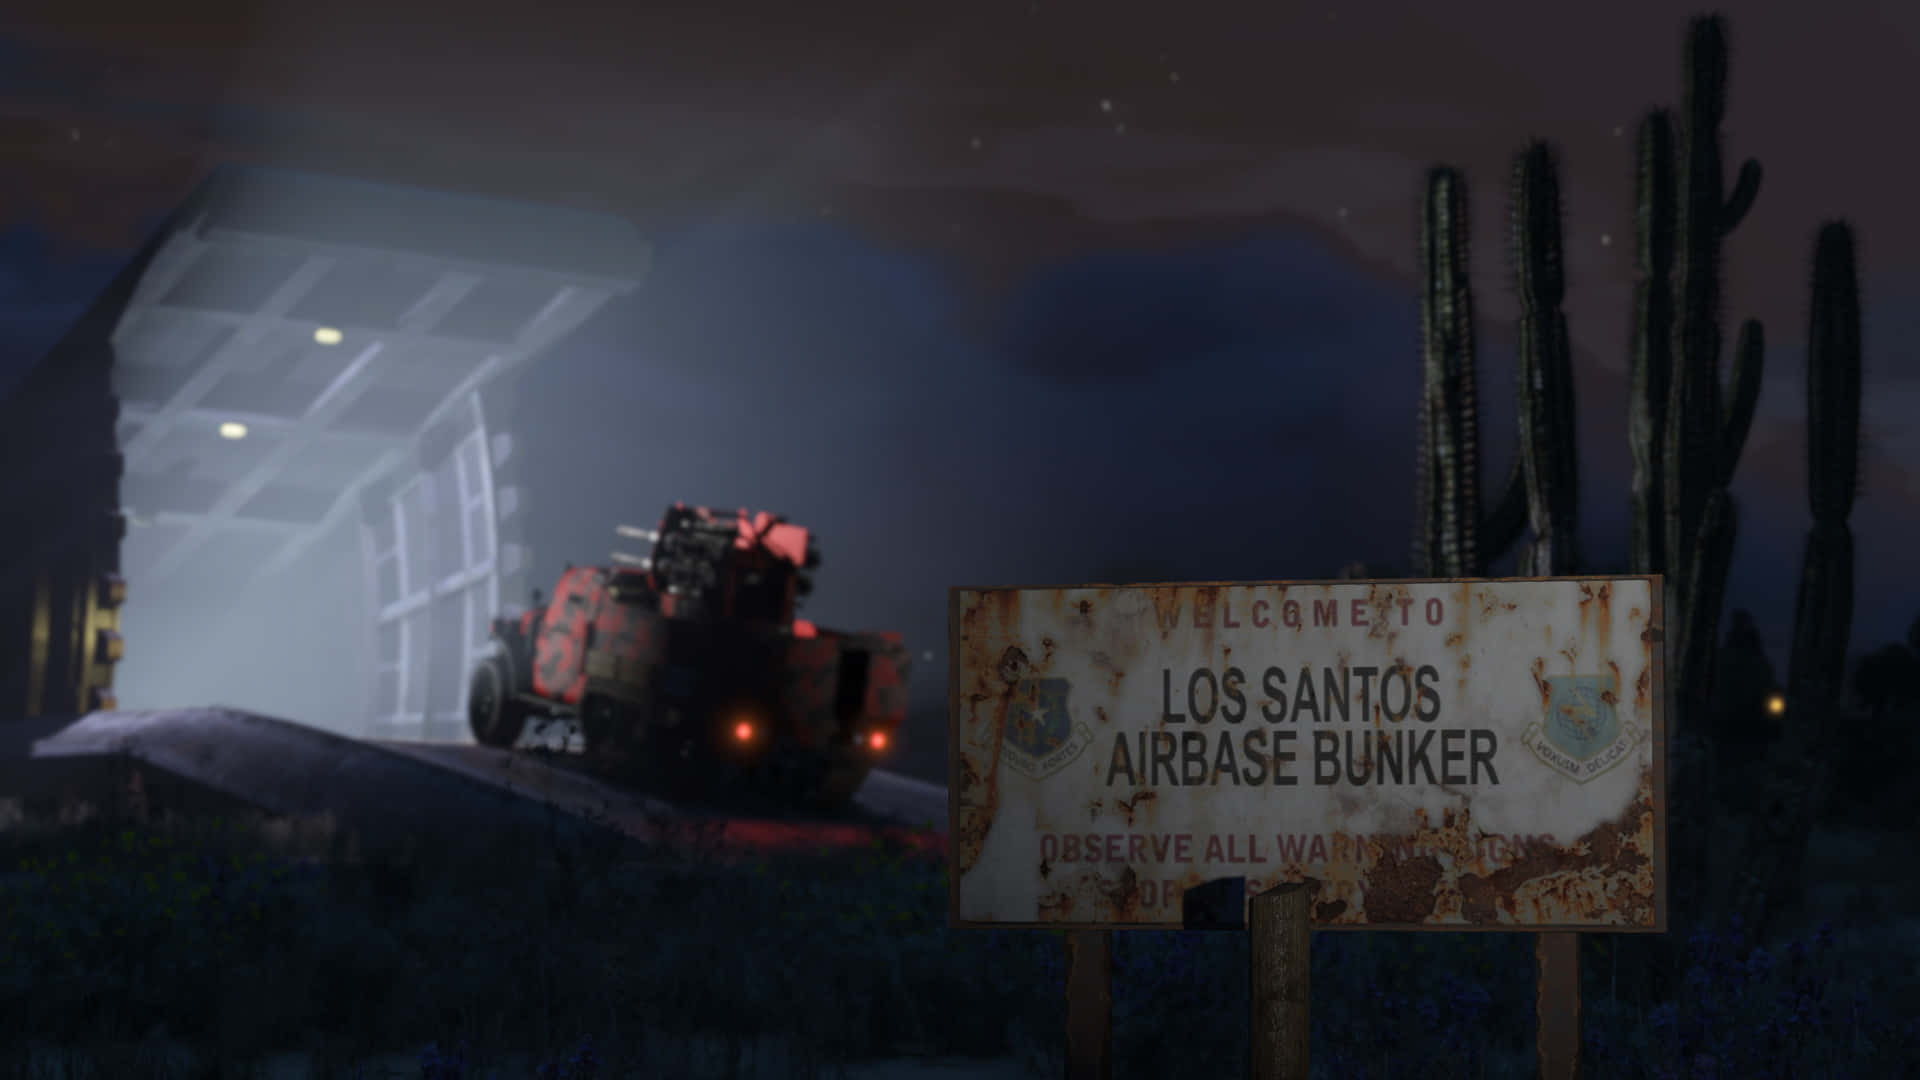 Udforsk Los Santos i Grand Theft Auto 5 med denne tapet! Wallpaper